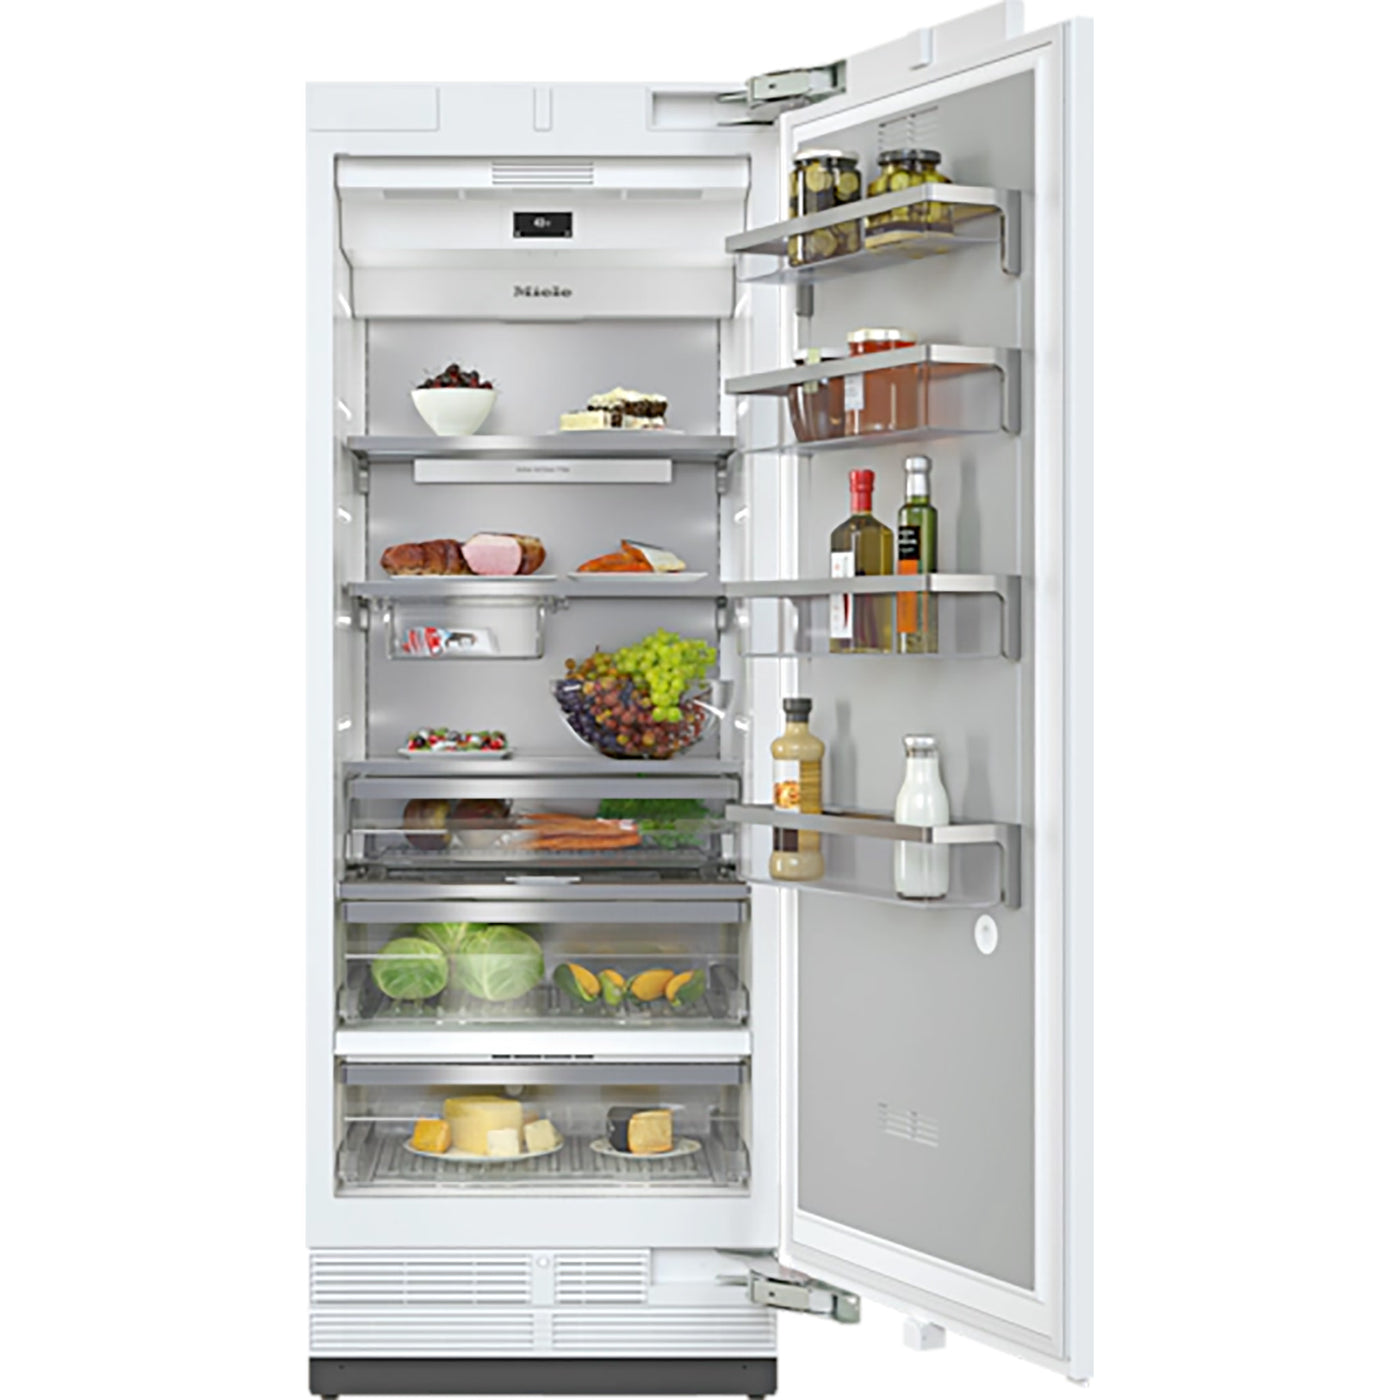 Miele-Refrigerator-K 2802 Vi